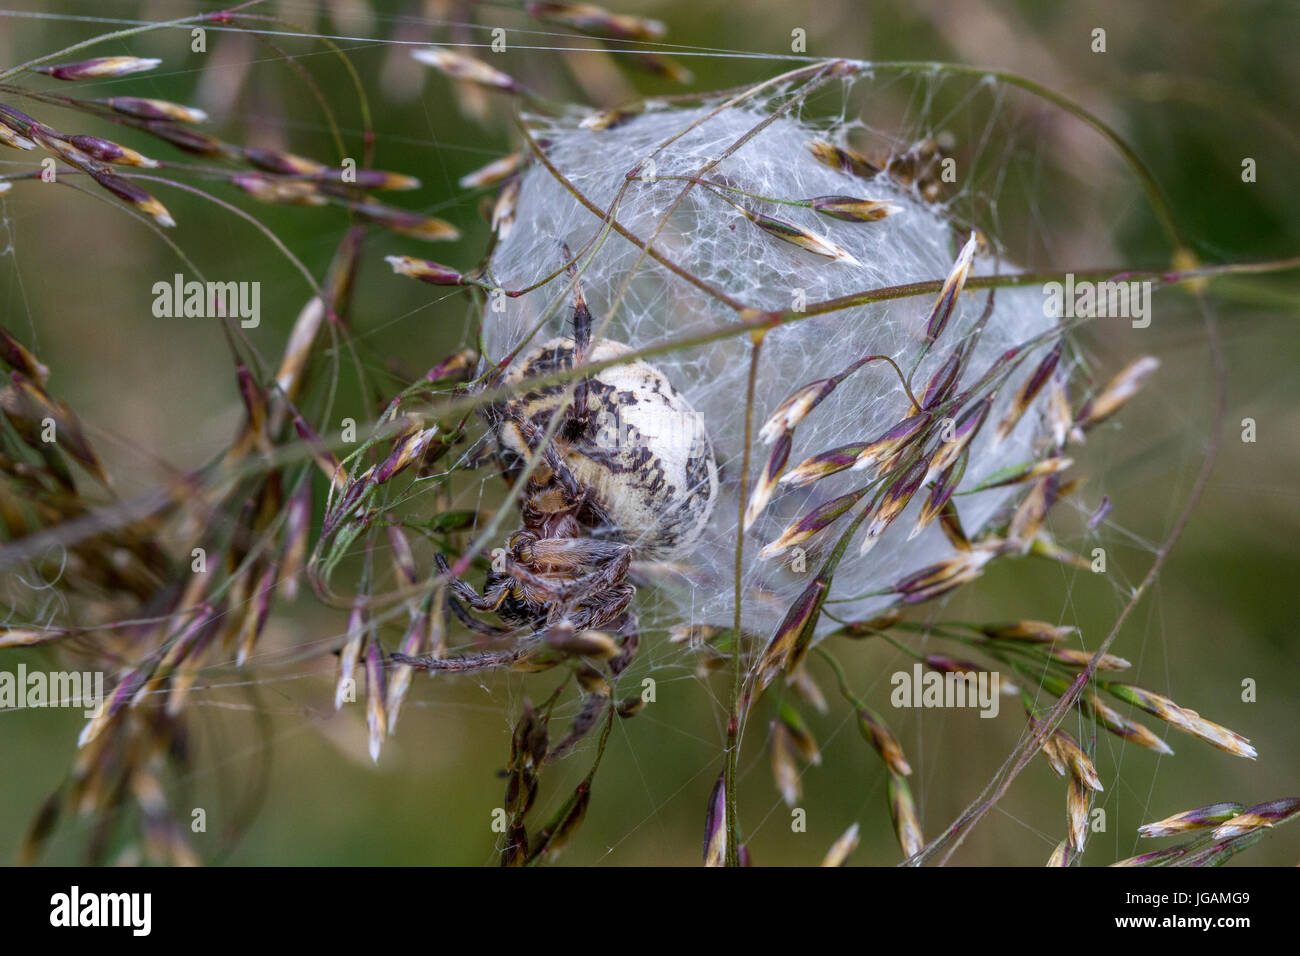 UK-Tierwelt: Furche Orb Spider (Larinioides) in seidenen Bau errichtet an der Spitze des Grases Stielen, West Yorkshire, England, UK Stockfoto